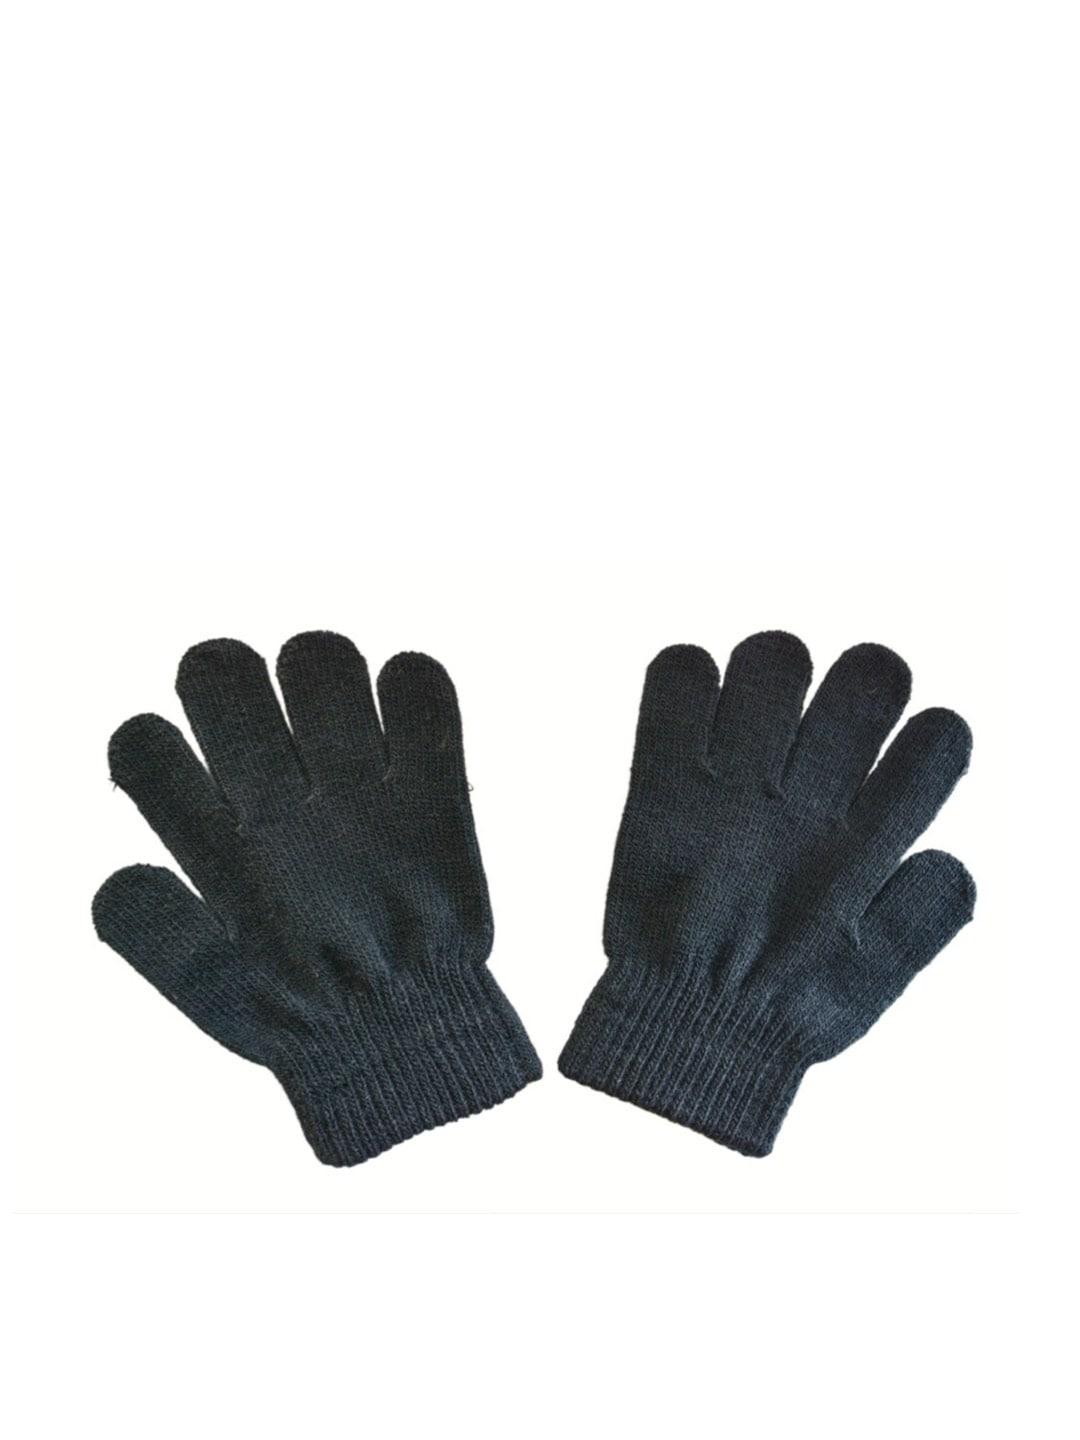 TIPY TIPY TAP Girls Full Finger Woolen Winter Gloves